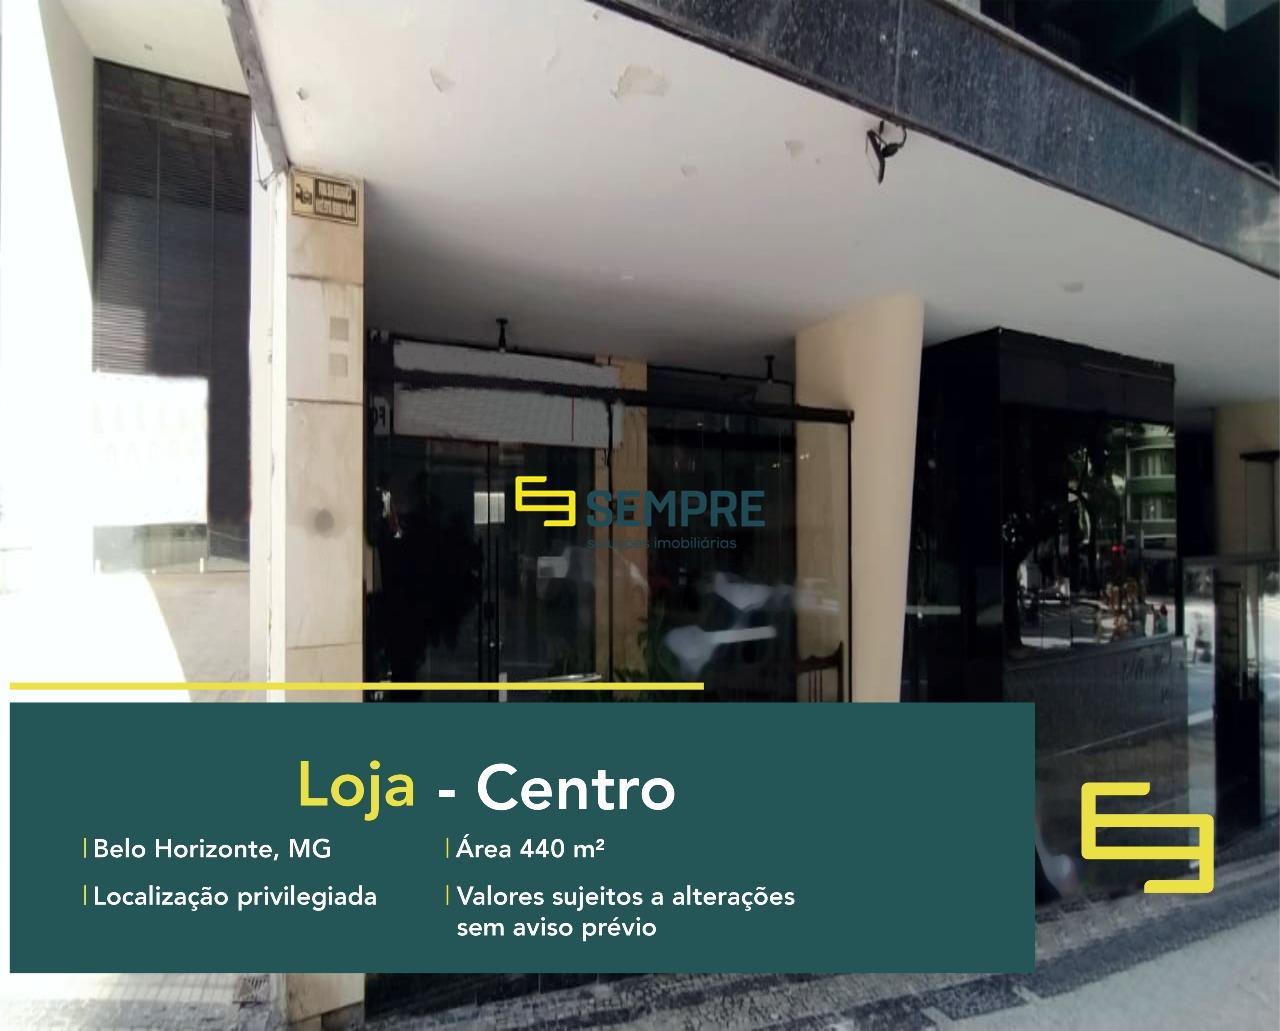 Loja para locação no Centro de Belo Horizonte, em excelente localização. O Estabelecimento comercial para alugar contra com área de 440 m².